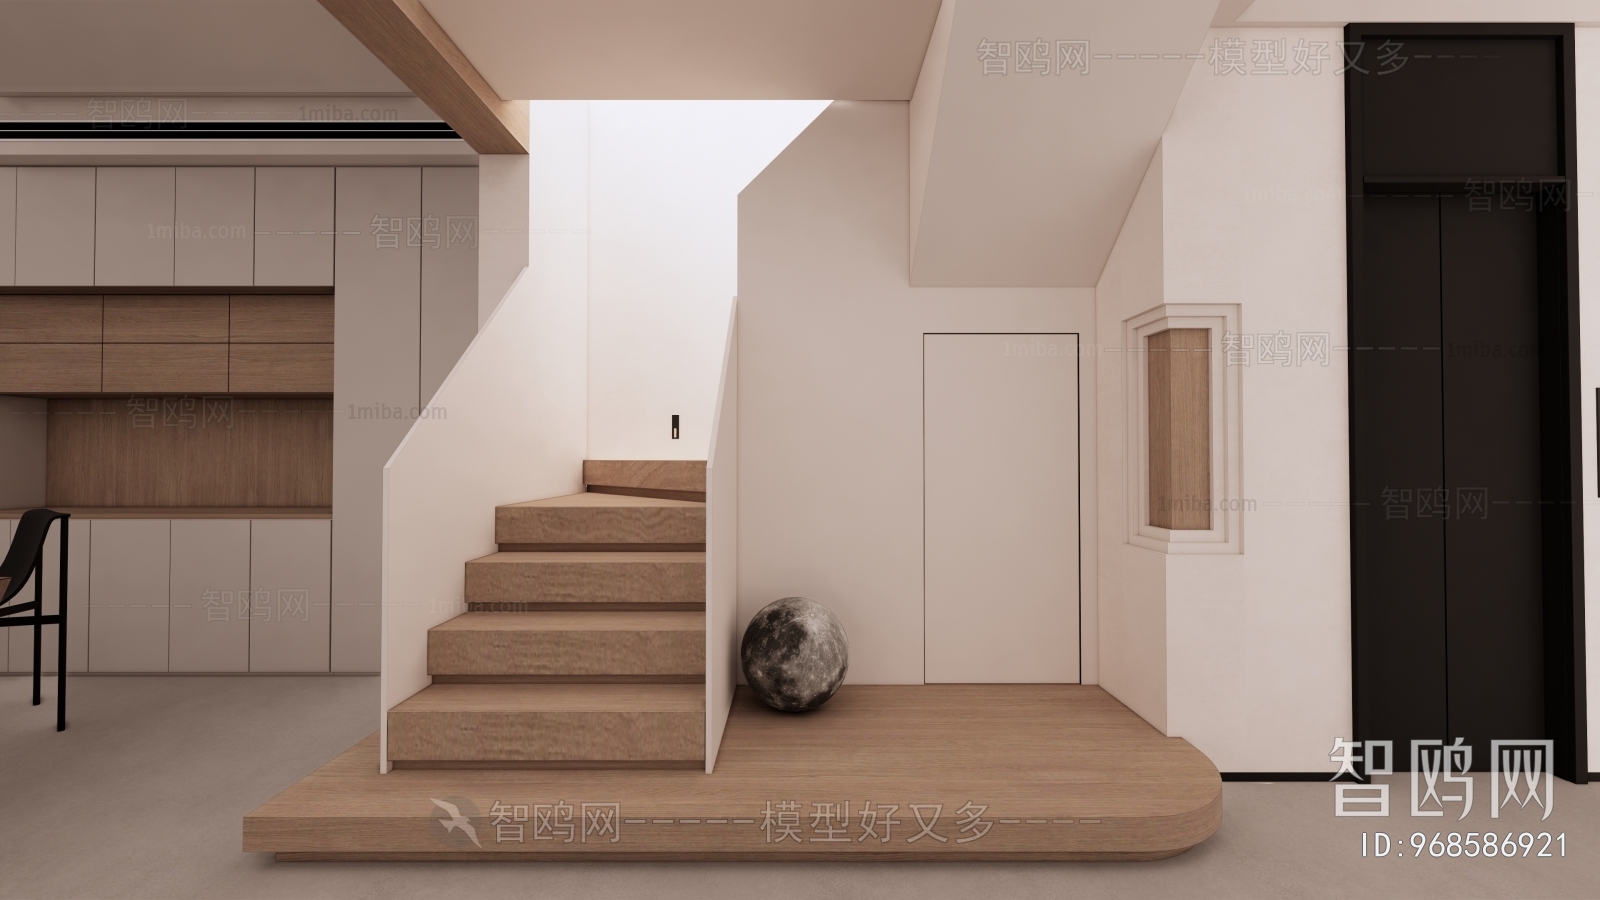 Wabi-sabi Style Stairwell